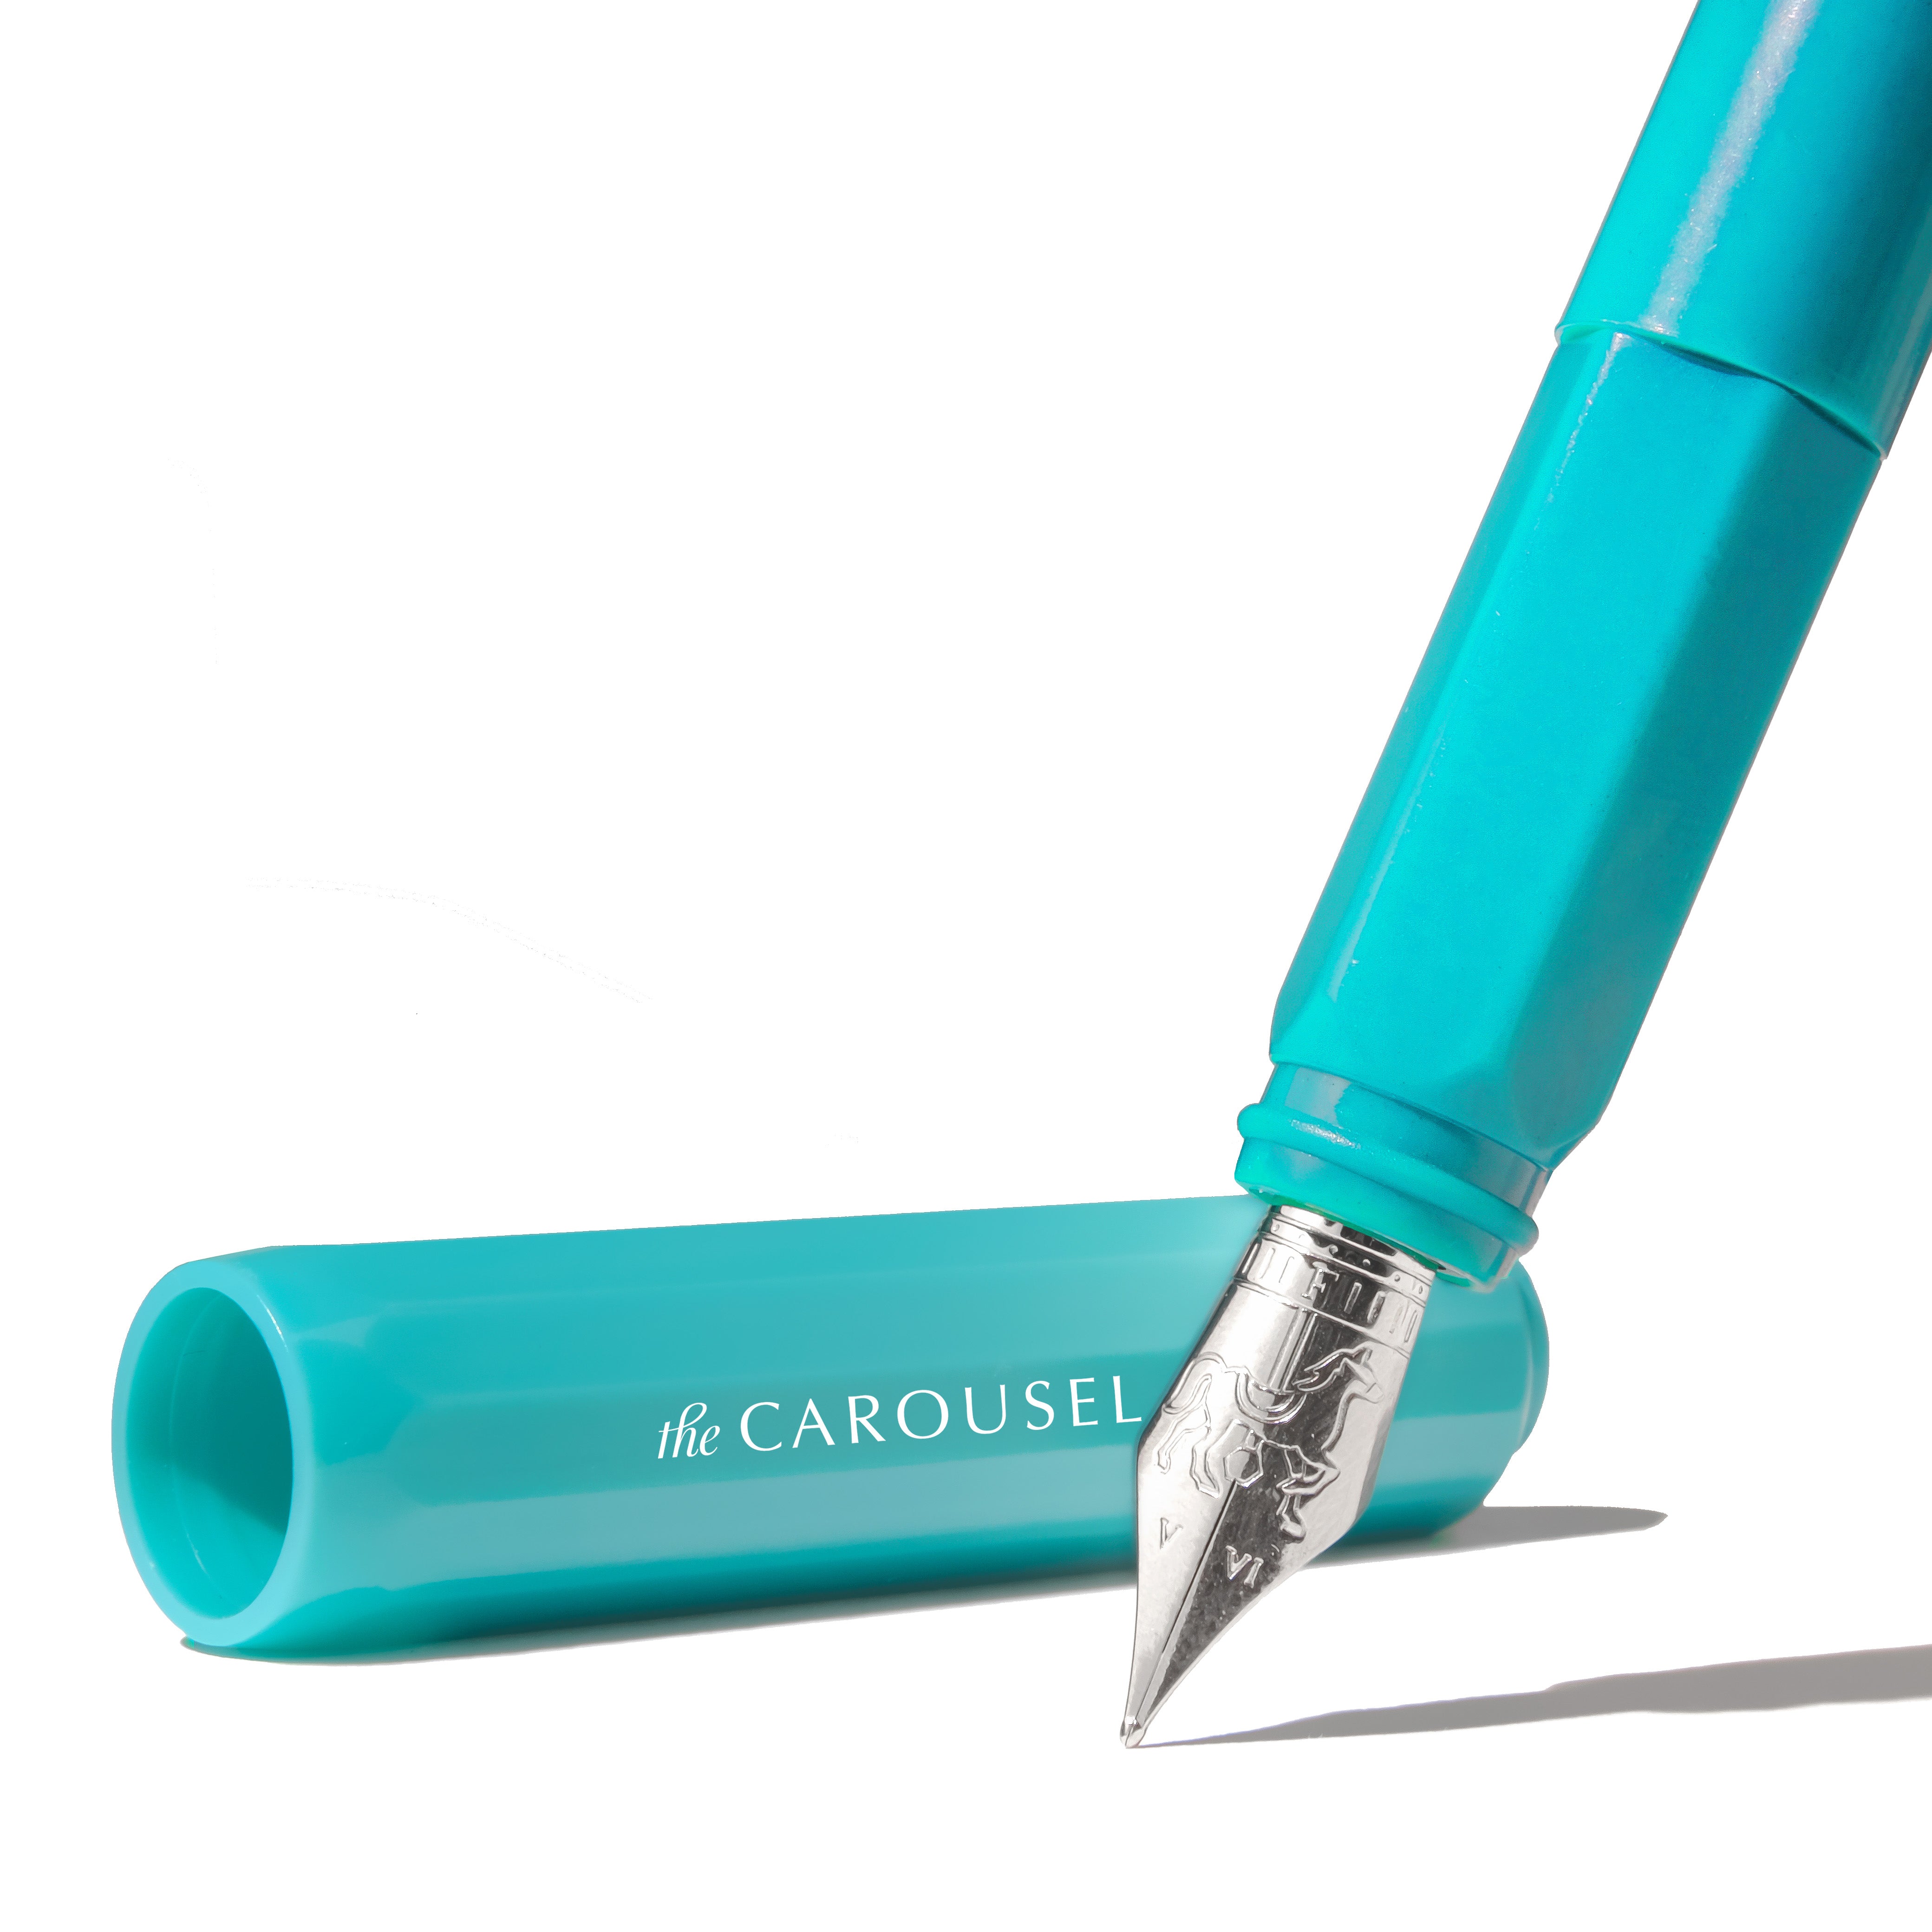 Carousel Pen - Medium - Tumultous Tides